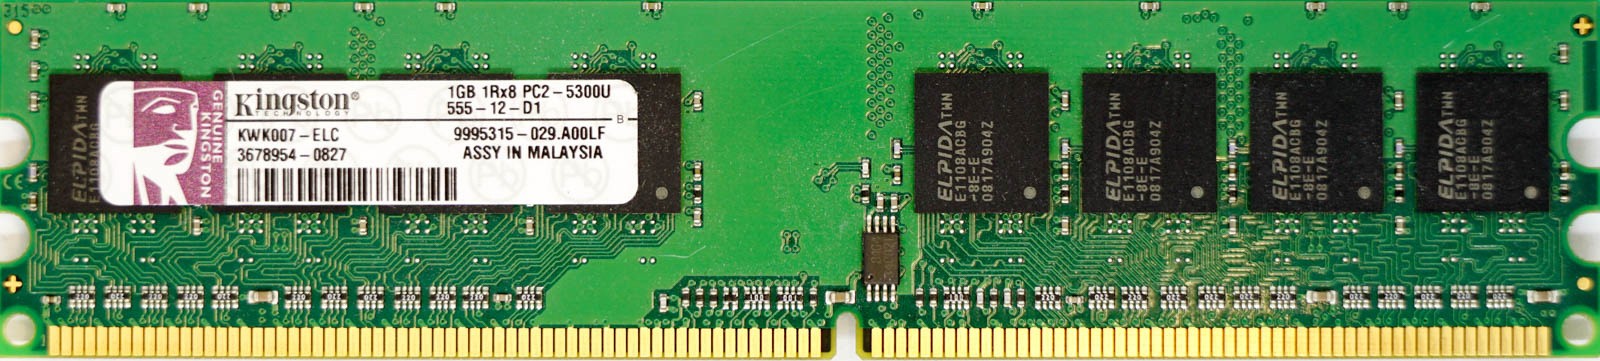 Kingston - 1GB PC2-5300U (DDR2-667Mhz, 1RX8)